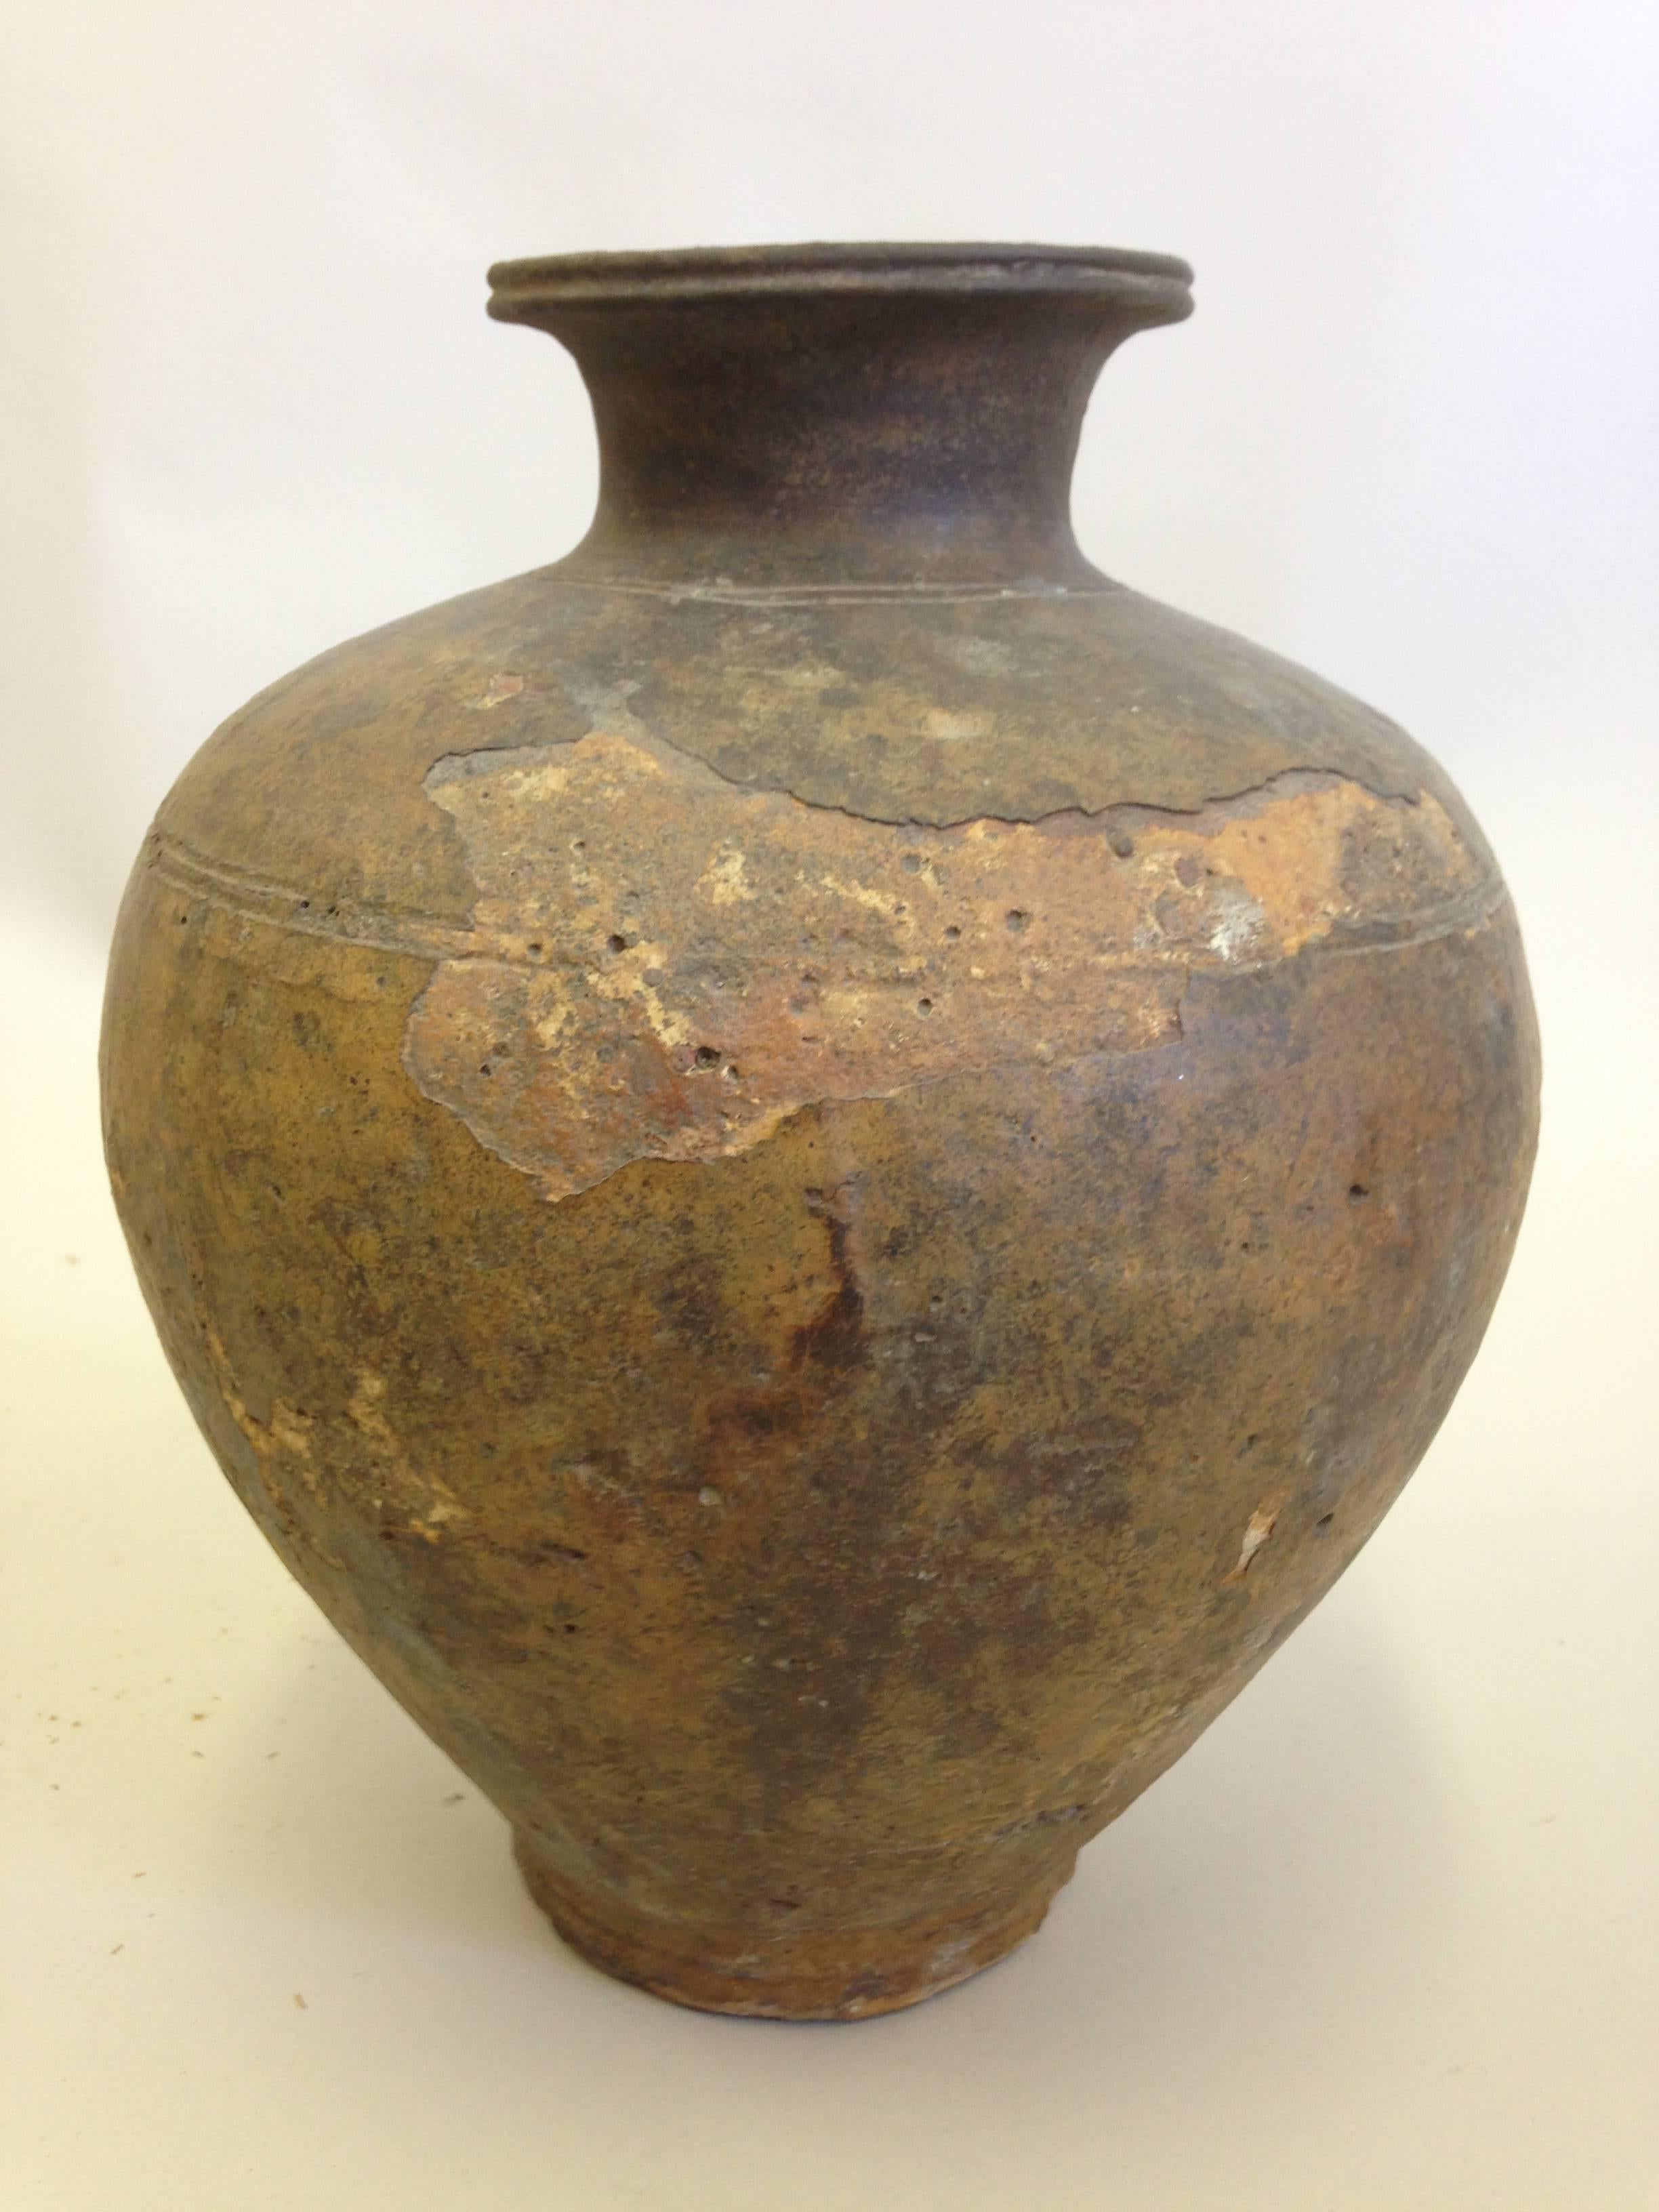 Grande urne ou vase khmer ancien, de forme sobre et classique. La pièce présente une coloration variée et magnifique due à l'effet du temps, de l'humidité et du climat sur la structure de l'argile. 

Les pièces khmères mettent en valeur les